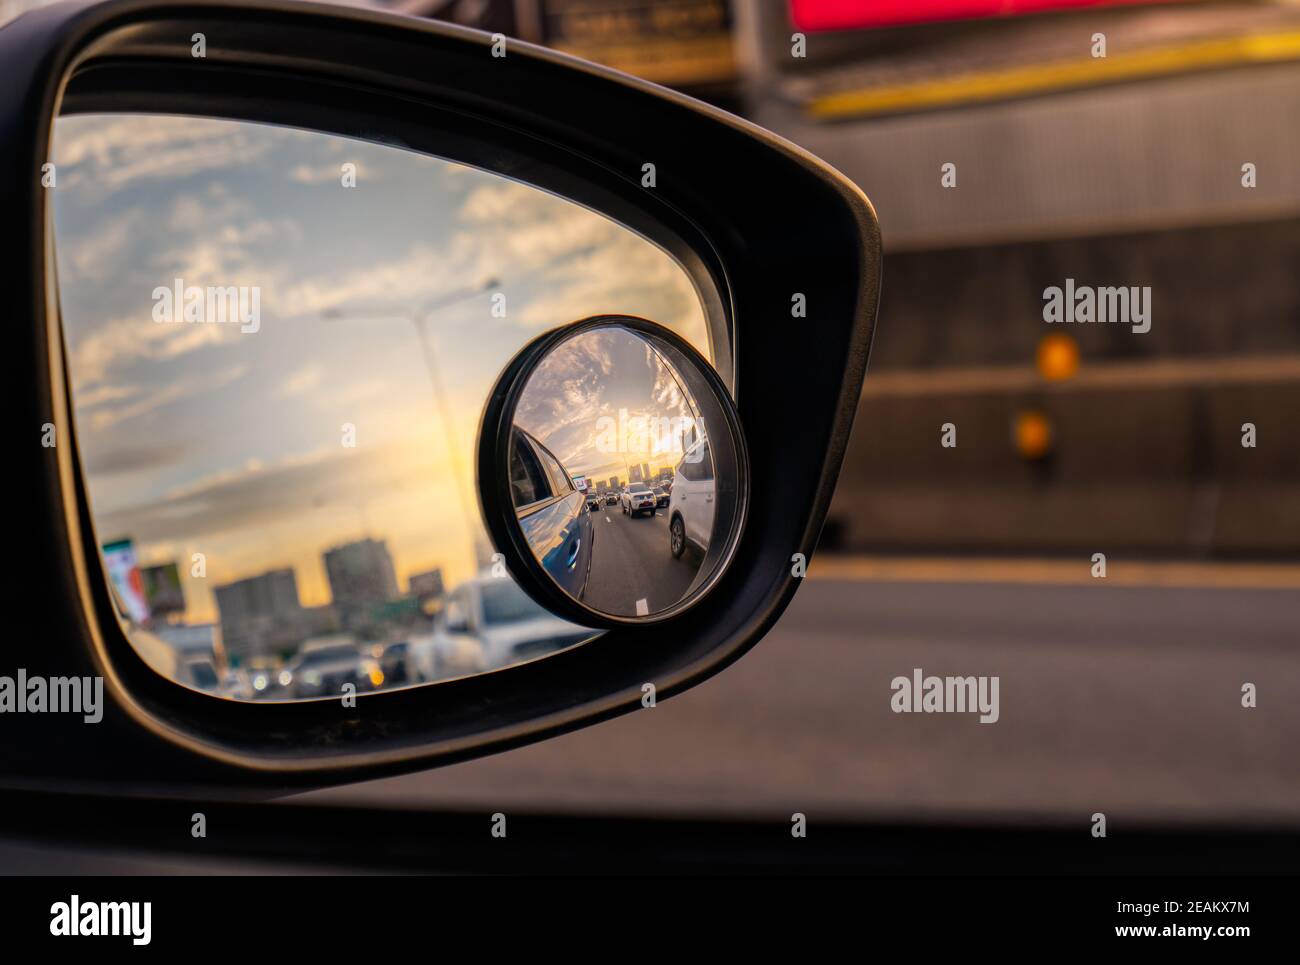 Spiegelung des Verkehrsflusses auf Asphaltstraße in Seitenspiegel des blauen SUV. Auto-Spiegel mit konvexer Spiegel für sicheres Fahren. Blick auf die Straße und Sonnenuntergang Himmel hinter Stadtbild durch Auto Seitenspiegel. Stockfoto